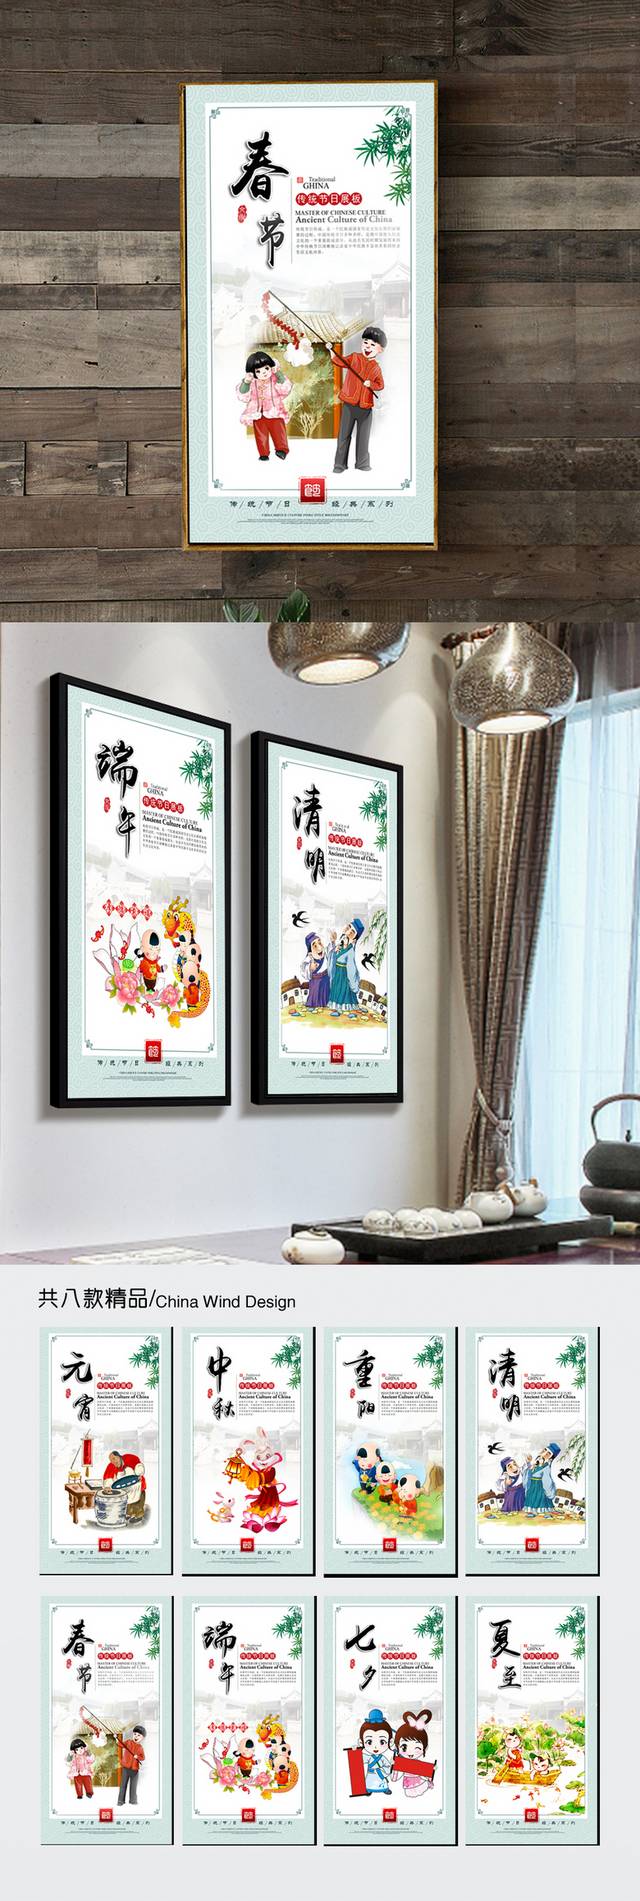 中华传统节日文化展板设计